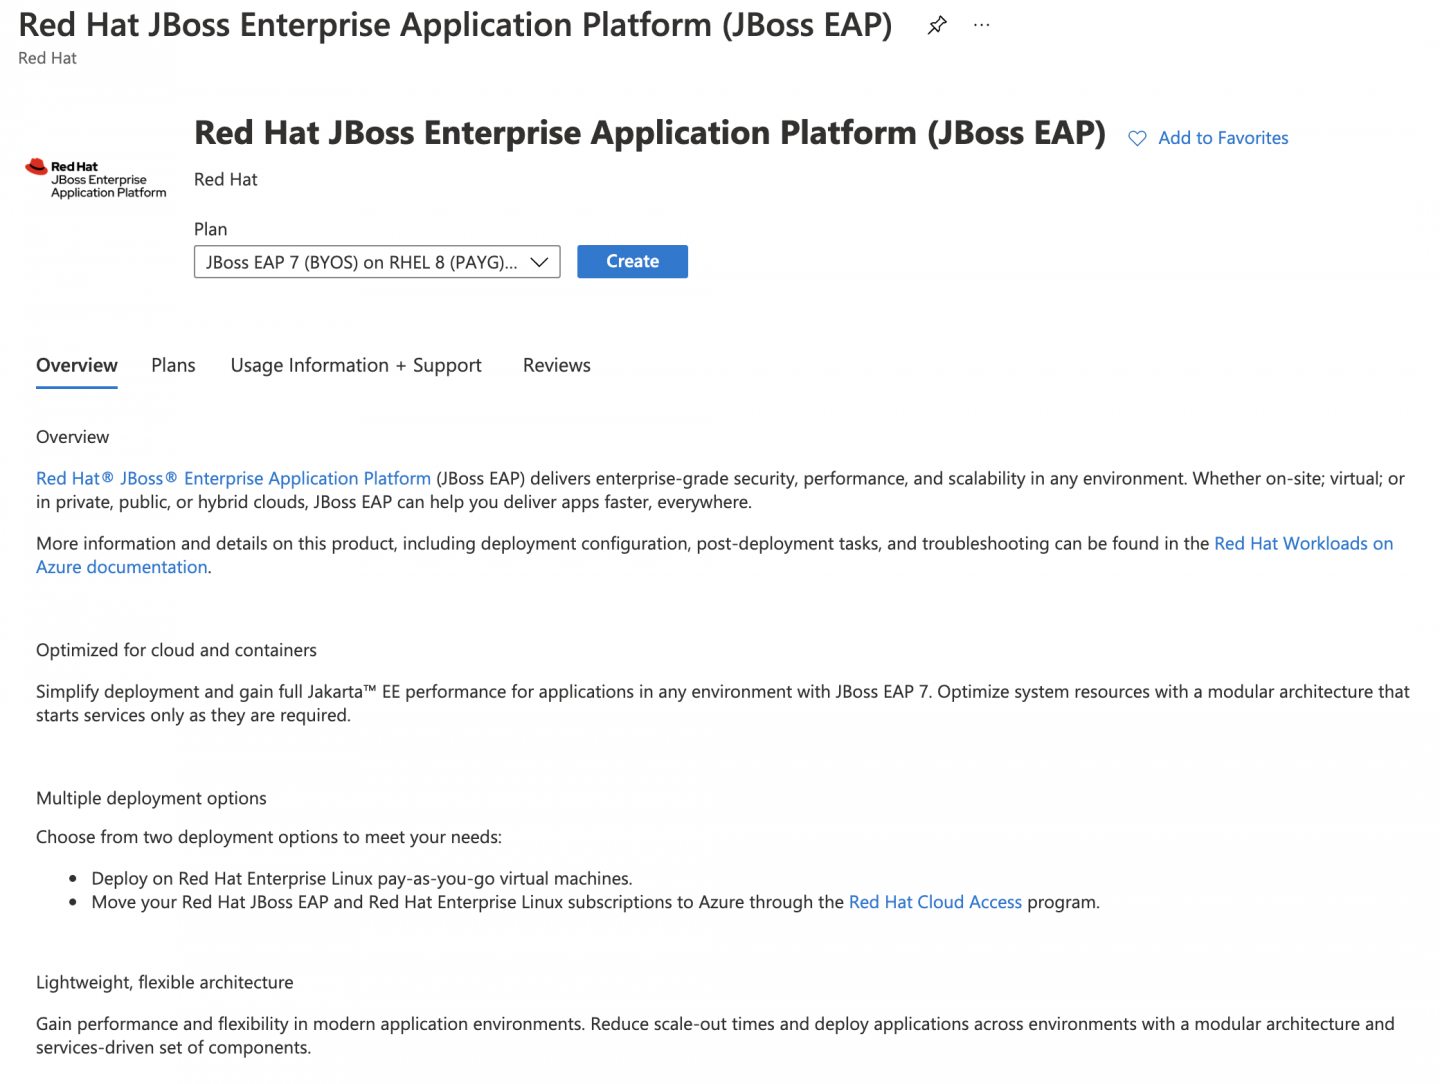 Azure has a JBoss EAP offering.